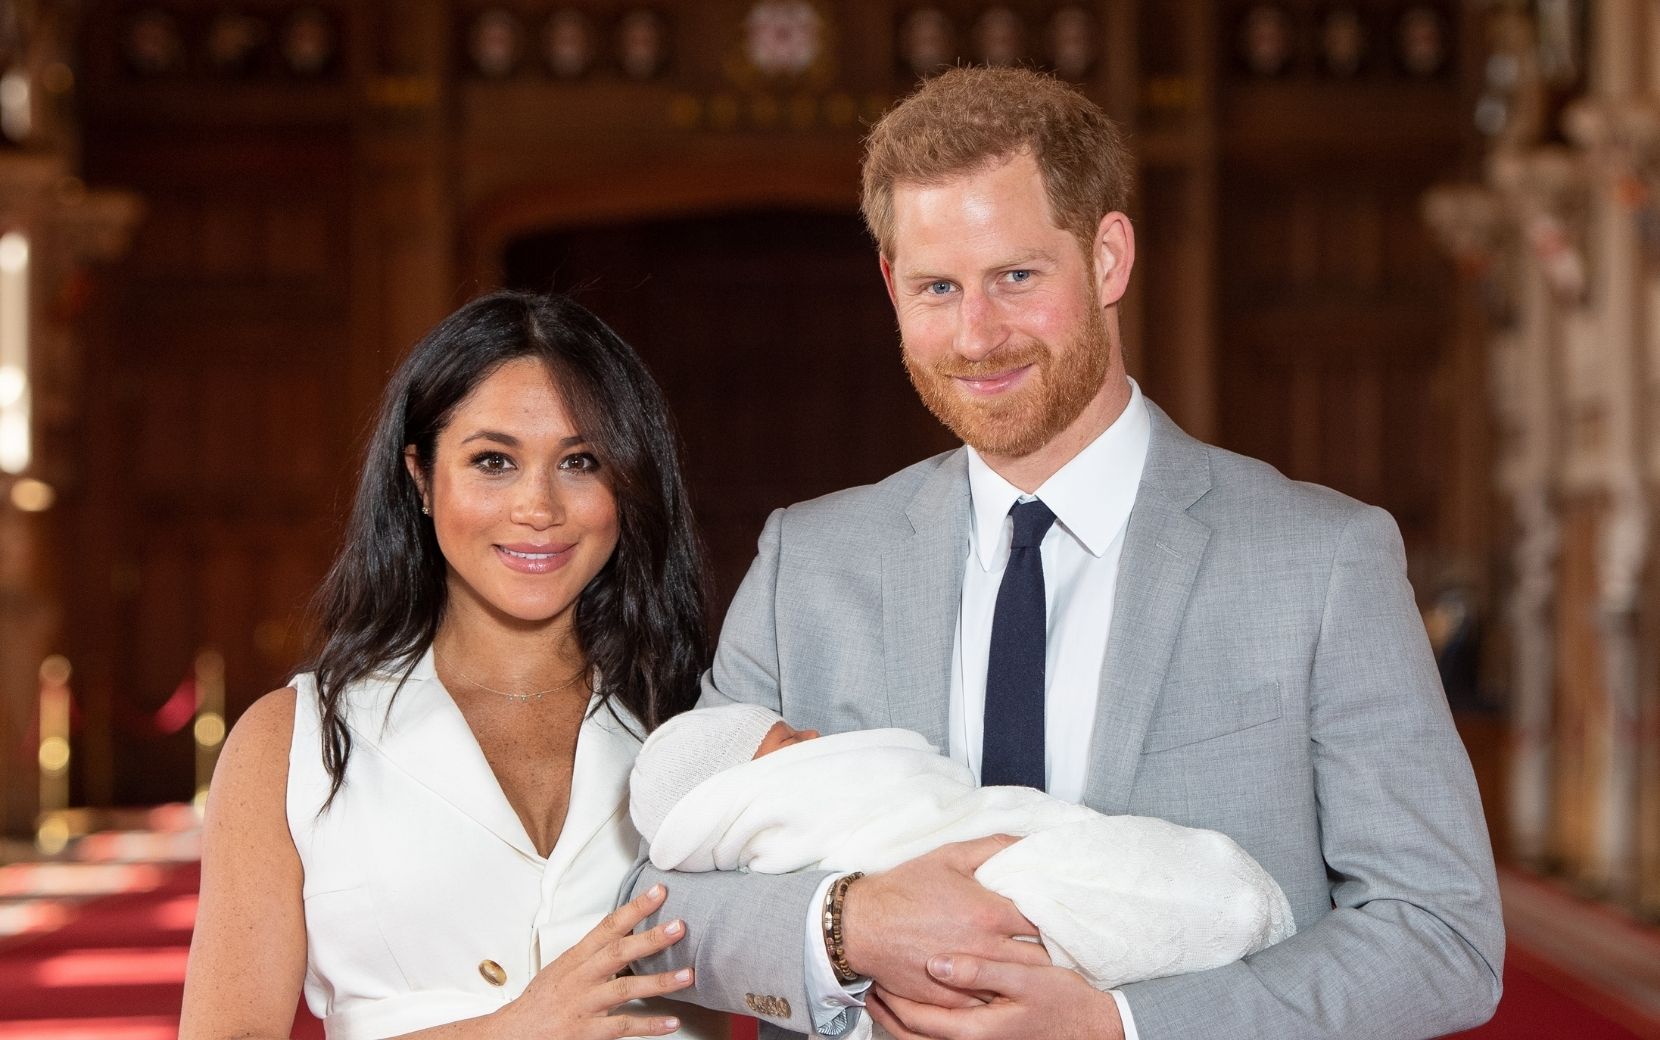 Archie será irmão mais velho! Príncipe Harry e Meghan Markle estão esperando o segundo filho juntos!